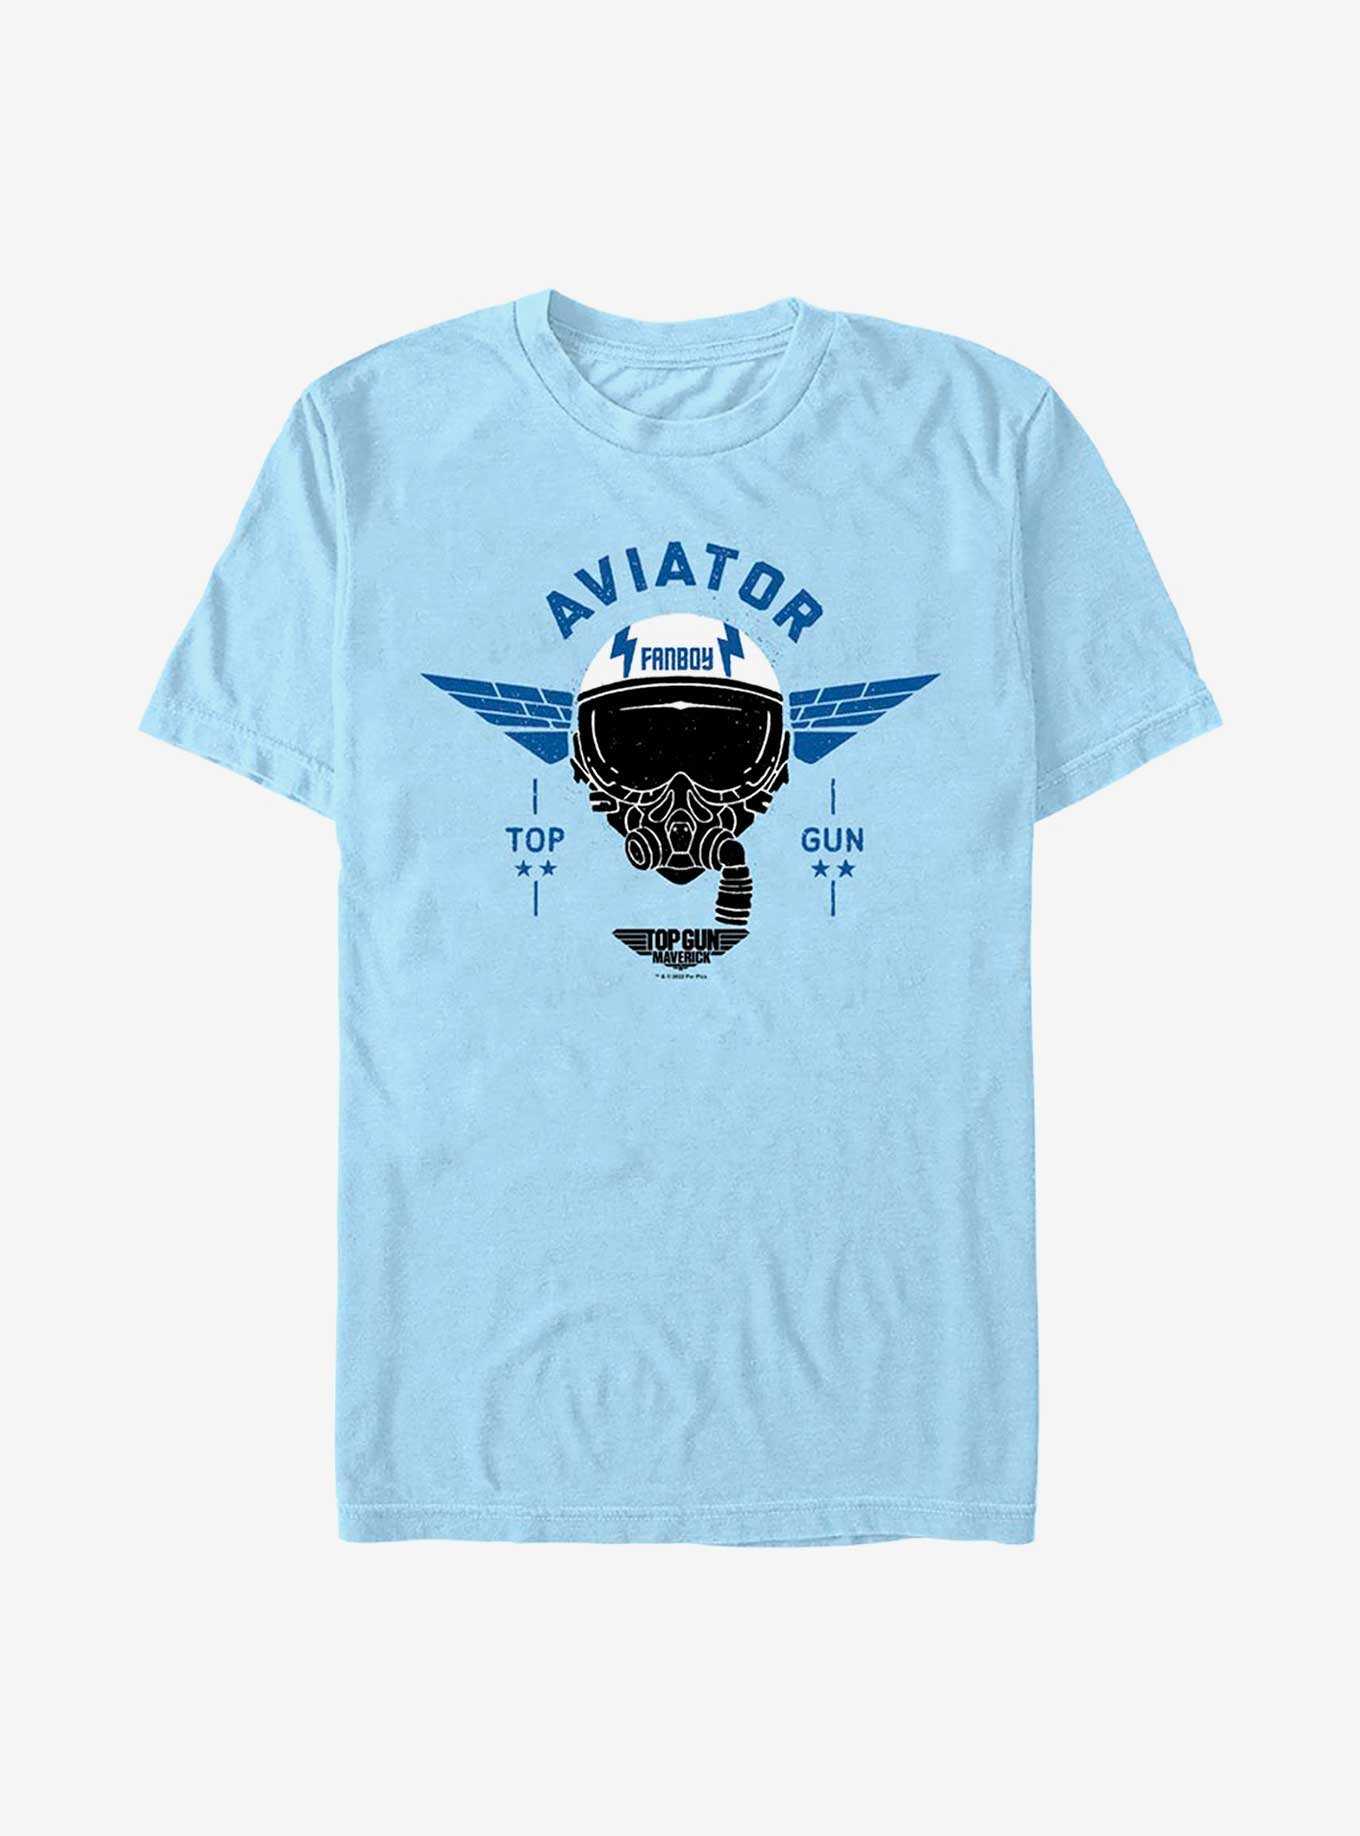 Top Gun: Maverick Fanboy Aviator T-Shirt, , hi-res